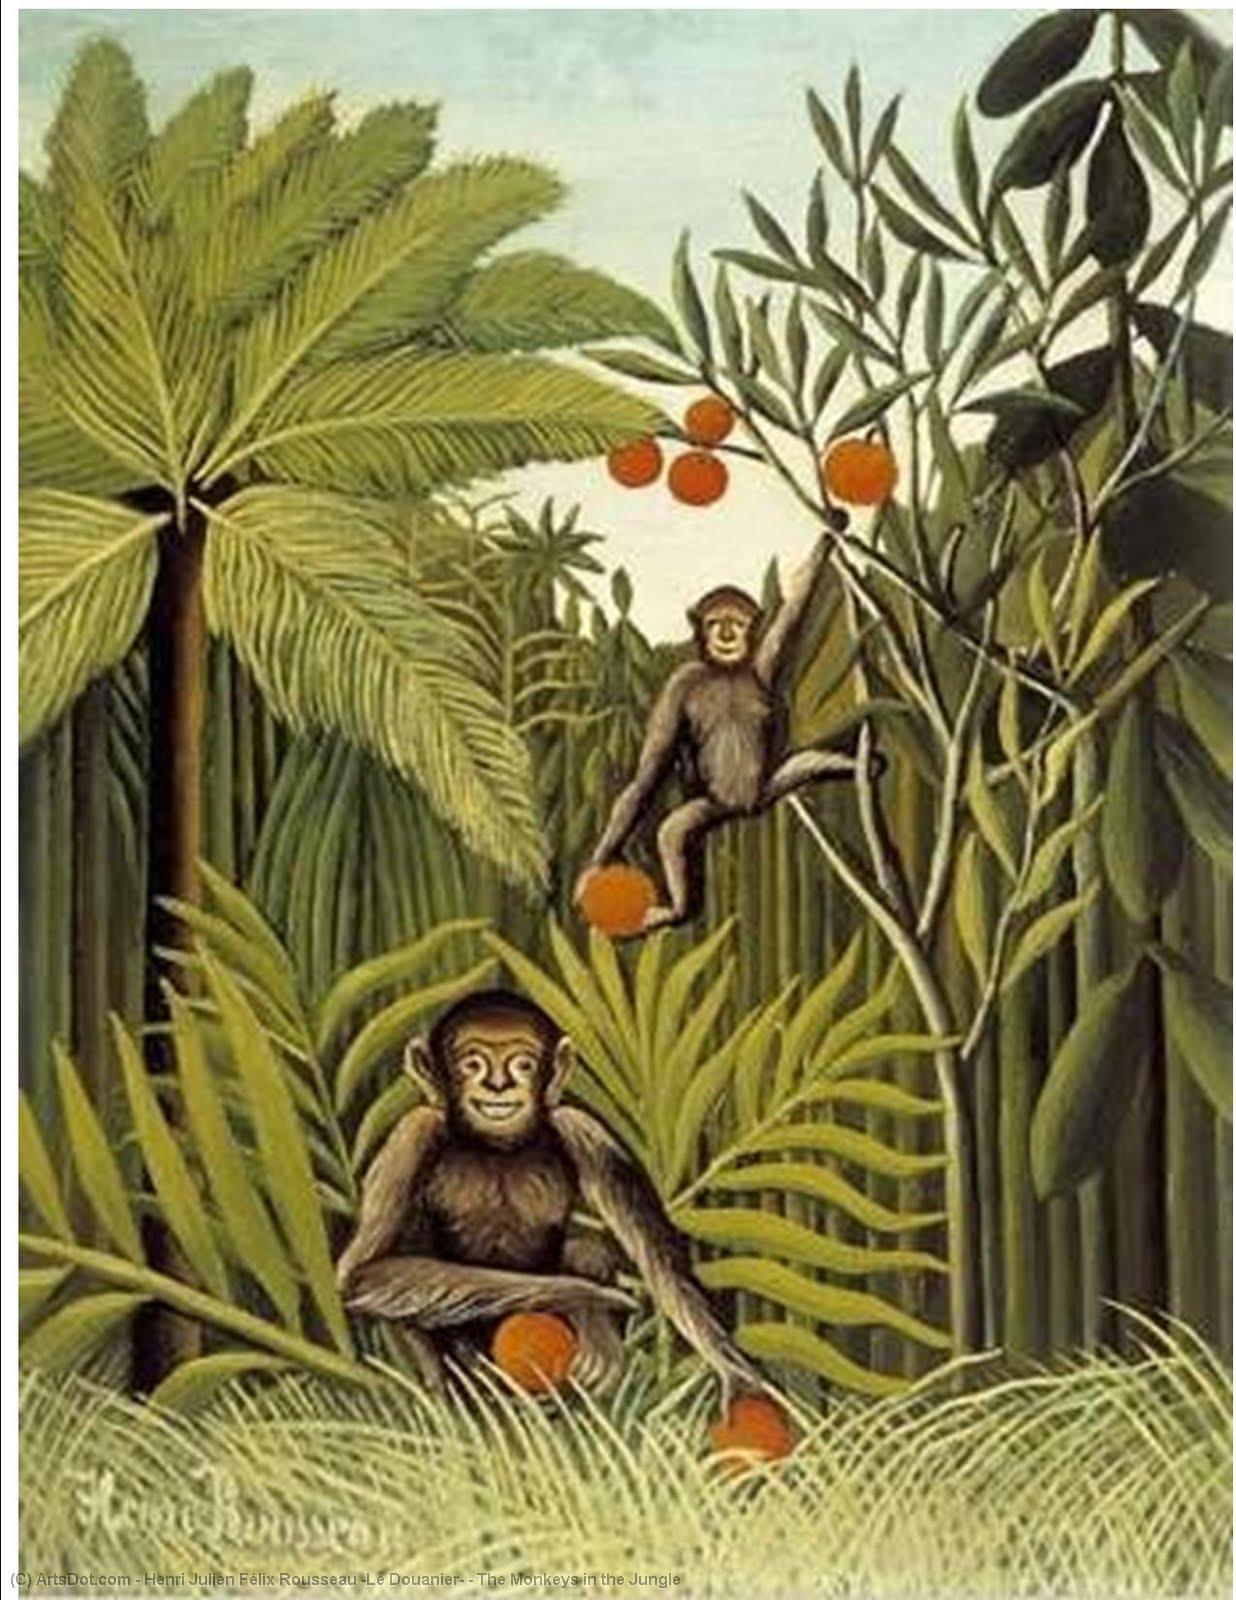 Wikioo.org - Bách khoa toàn thư về mỹ thuật - Vẽ tranh, Tác phẩm nghệ thuật Henri Julien Félix Rousseau (Le Douanier) - The Monkeys in the Jungle